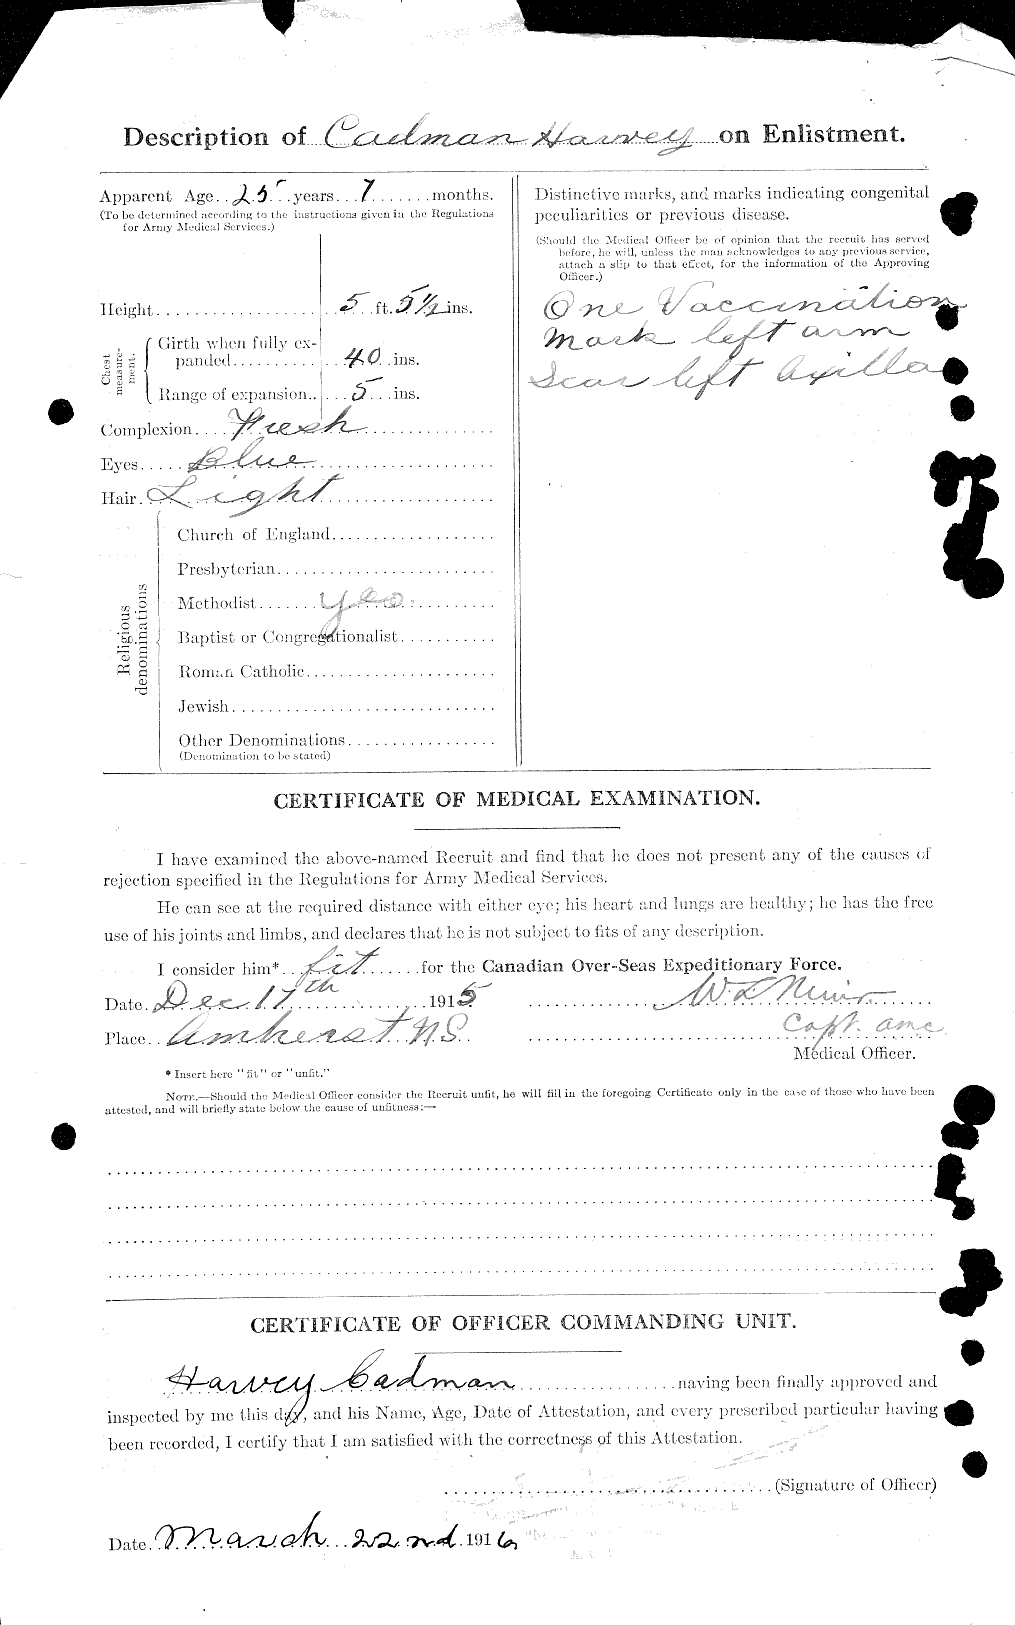 Dossiers du Personnel de la Première Guerre mondiale - CEC 001639b